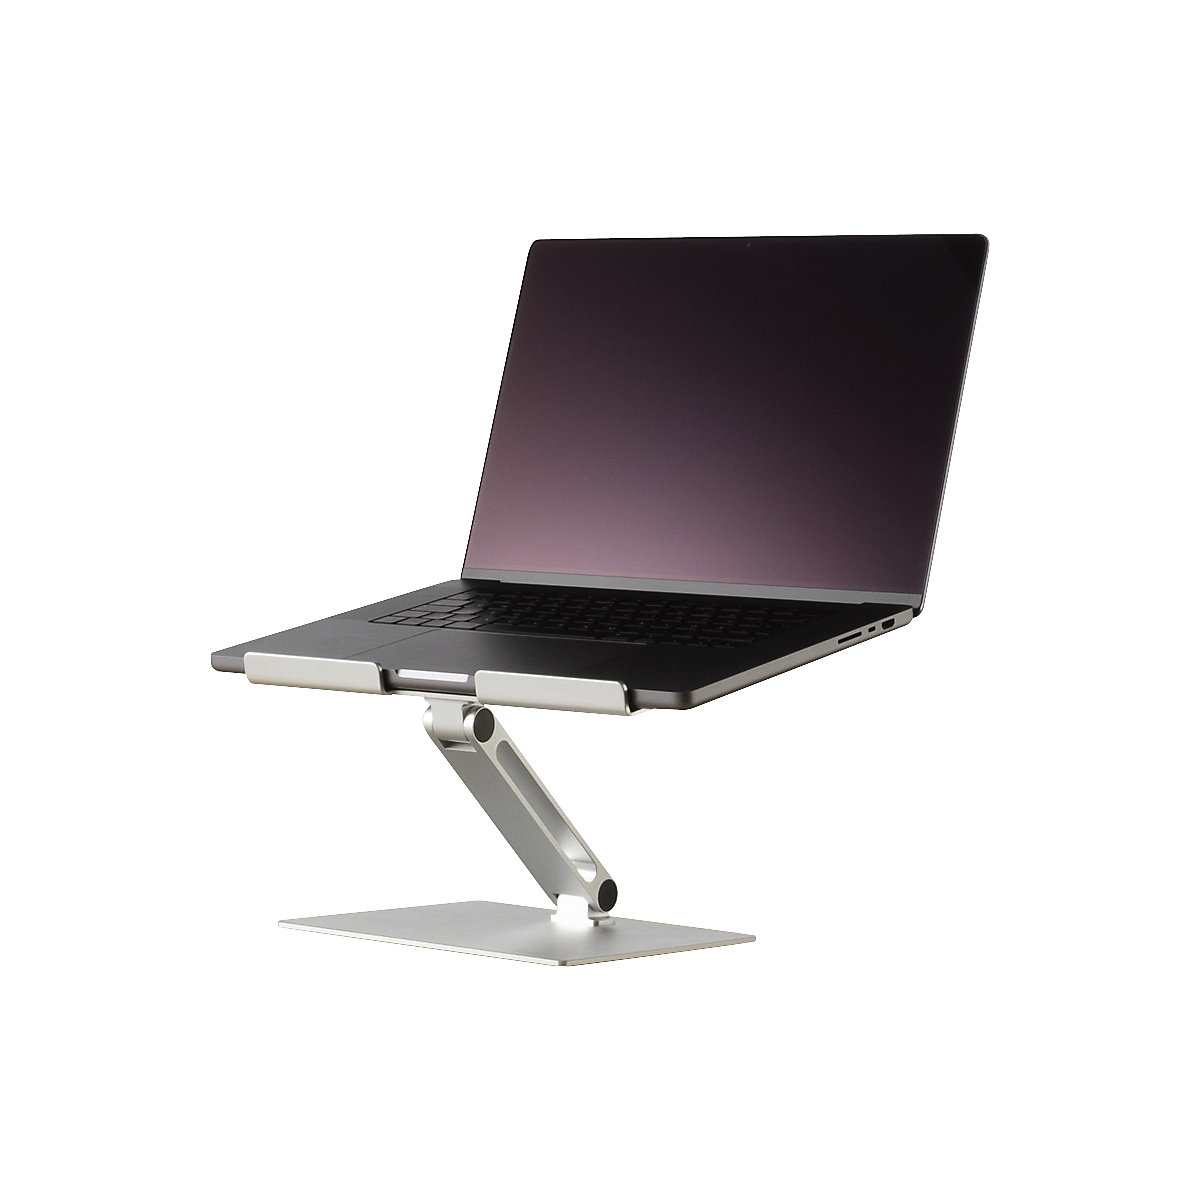 Supporto portatile multiuso per PC CLIPBOARD – Misa Promo